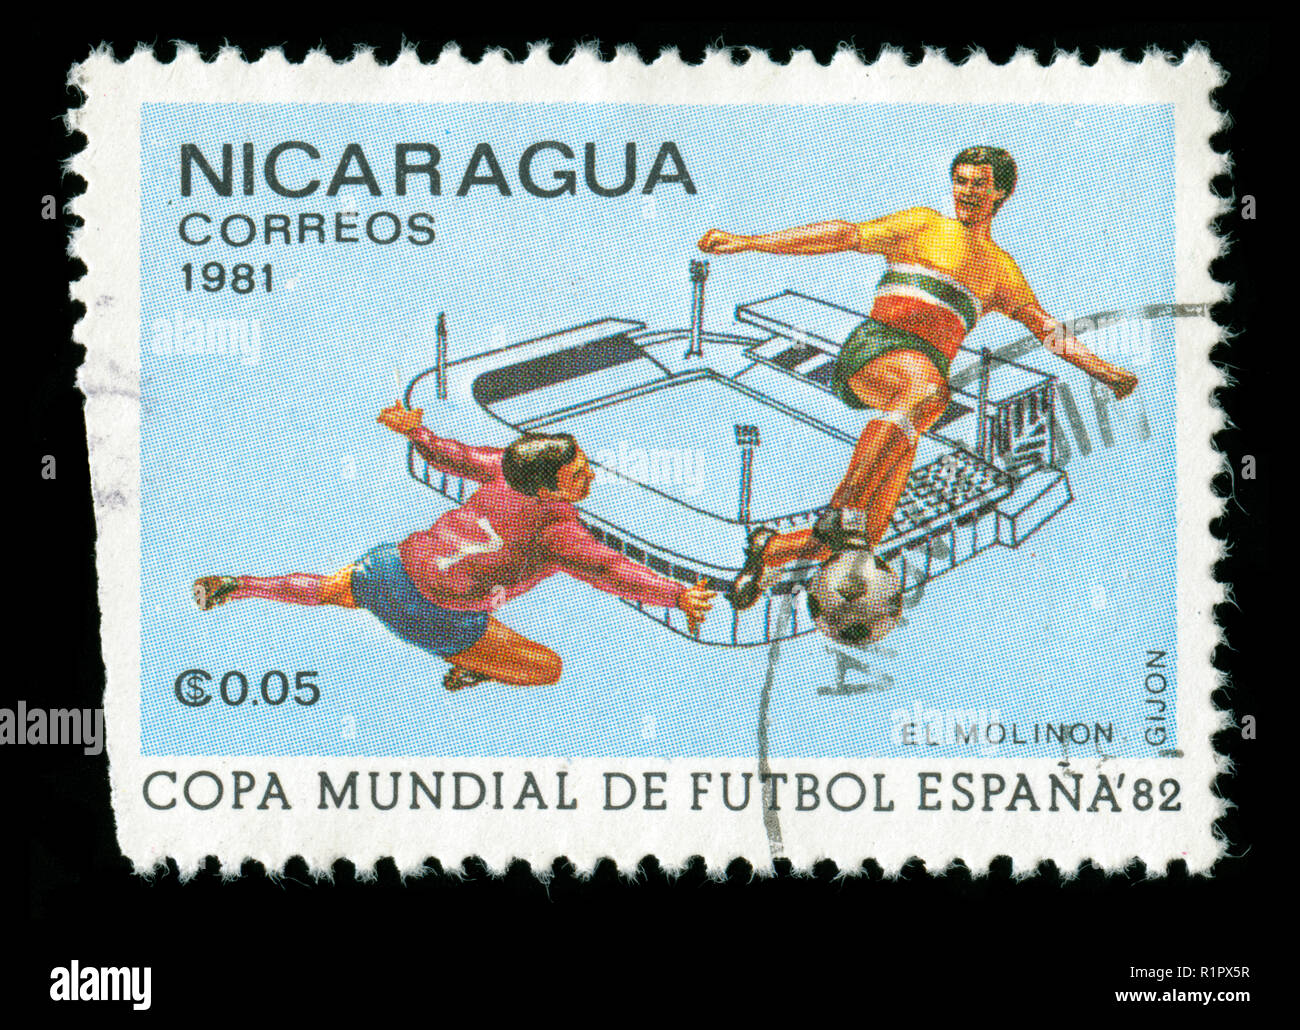 Poststempel Stempel aus Nicaragua in der FIFA-WM 1982 - Spanien Serie in 1981 Stockfoto